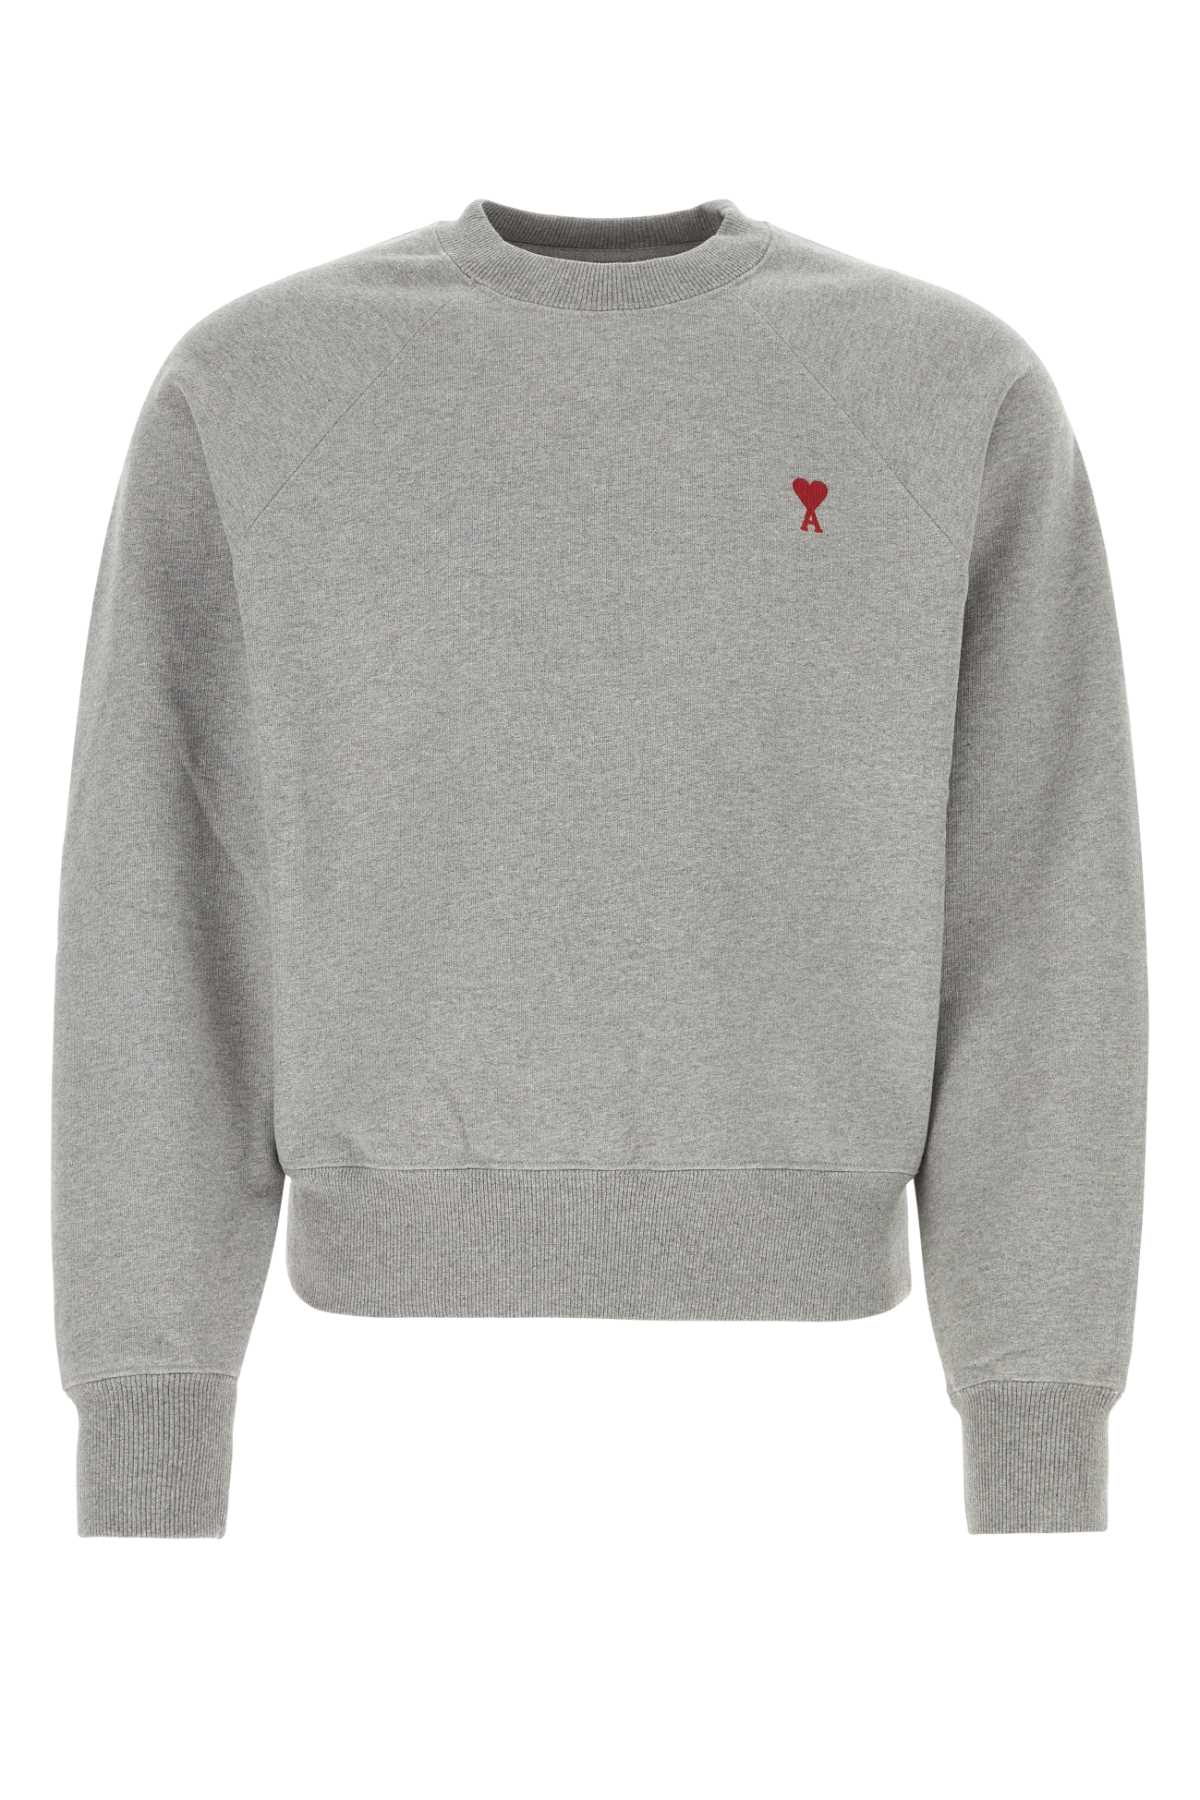 Ami Alexandre Mattiussi Grey Cotton Sweatshirt In Heathergrey